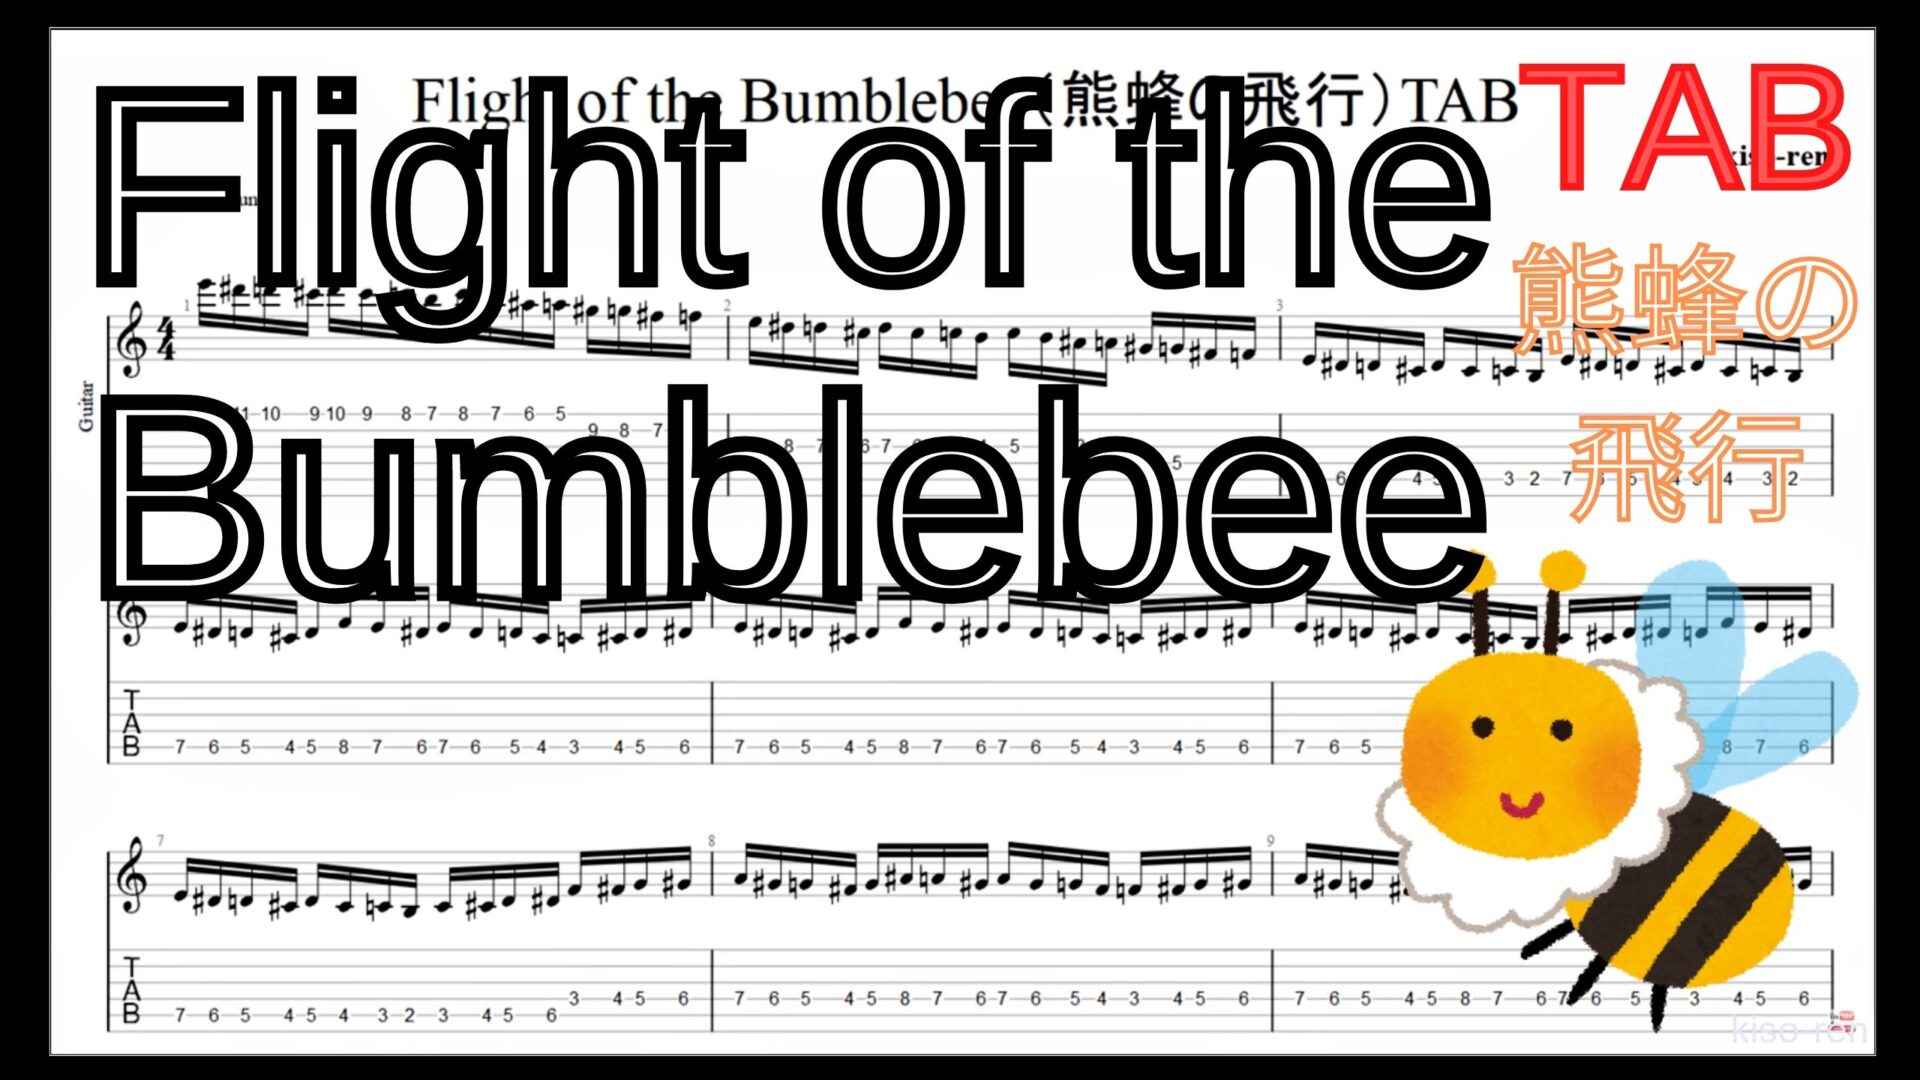 【ギターのピッキング上達練習】Flight of the Bumblebee Guitar TAB / 熊蜂の飛行 ギター TAB 楽譜【TAB ギターソロ速弾き】ギターのピッキングが上手くなりたい人にオススメのフレーズ特集｡初心者さんにもオススメ！